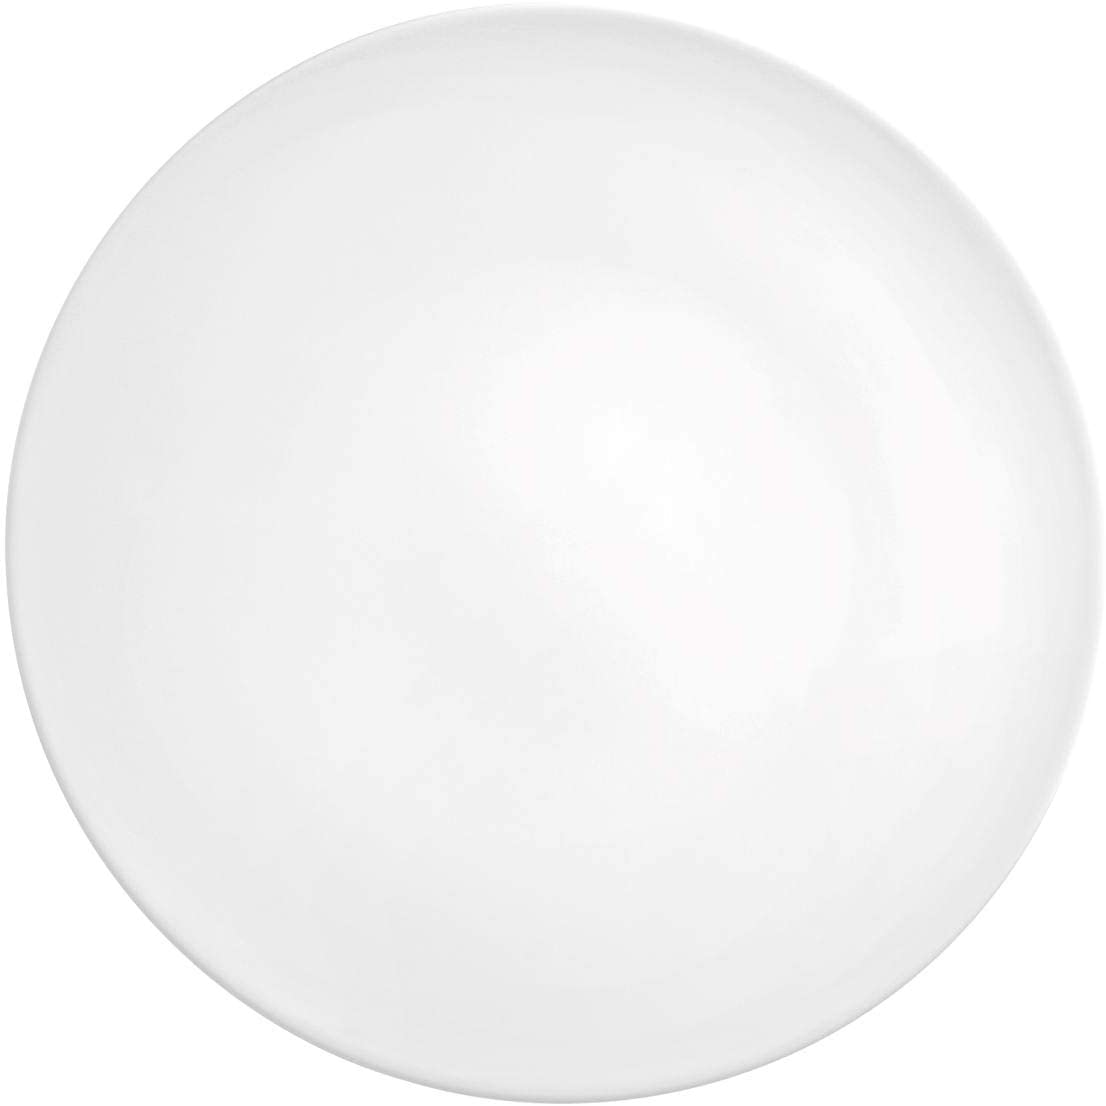 Seltmann Weiden 001.737219 Fashion White Serving Platter Round